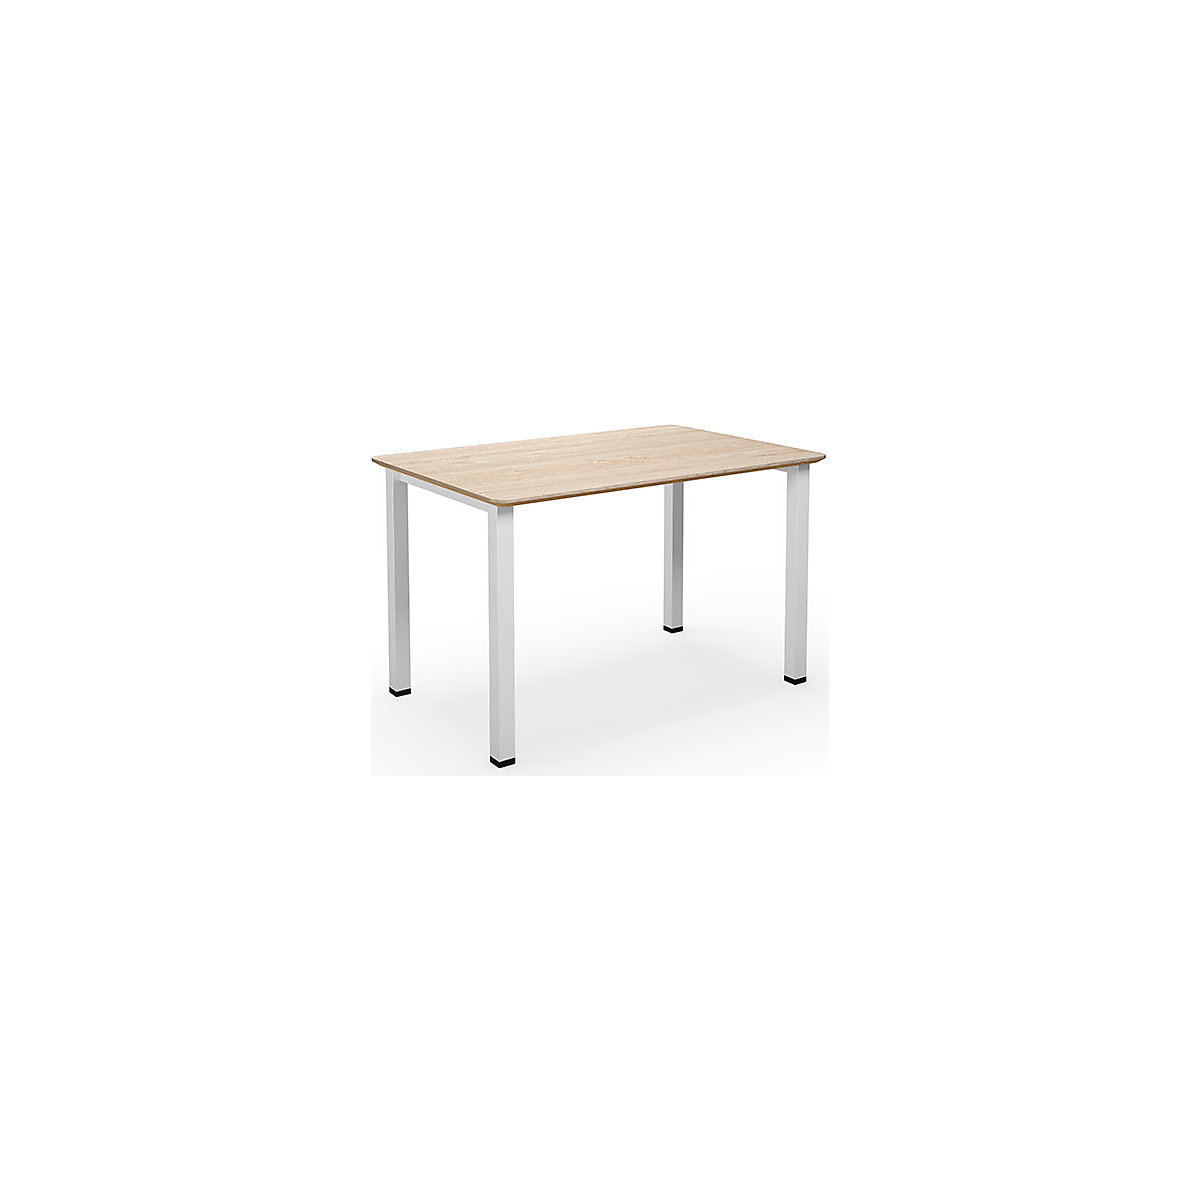 Višenamjenski stol DUO-U Trend, ravna ploča, zaobljeni kutovi